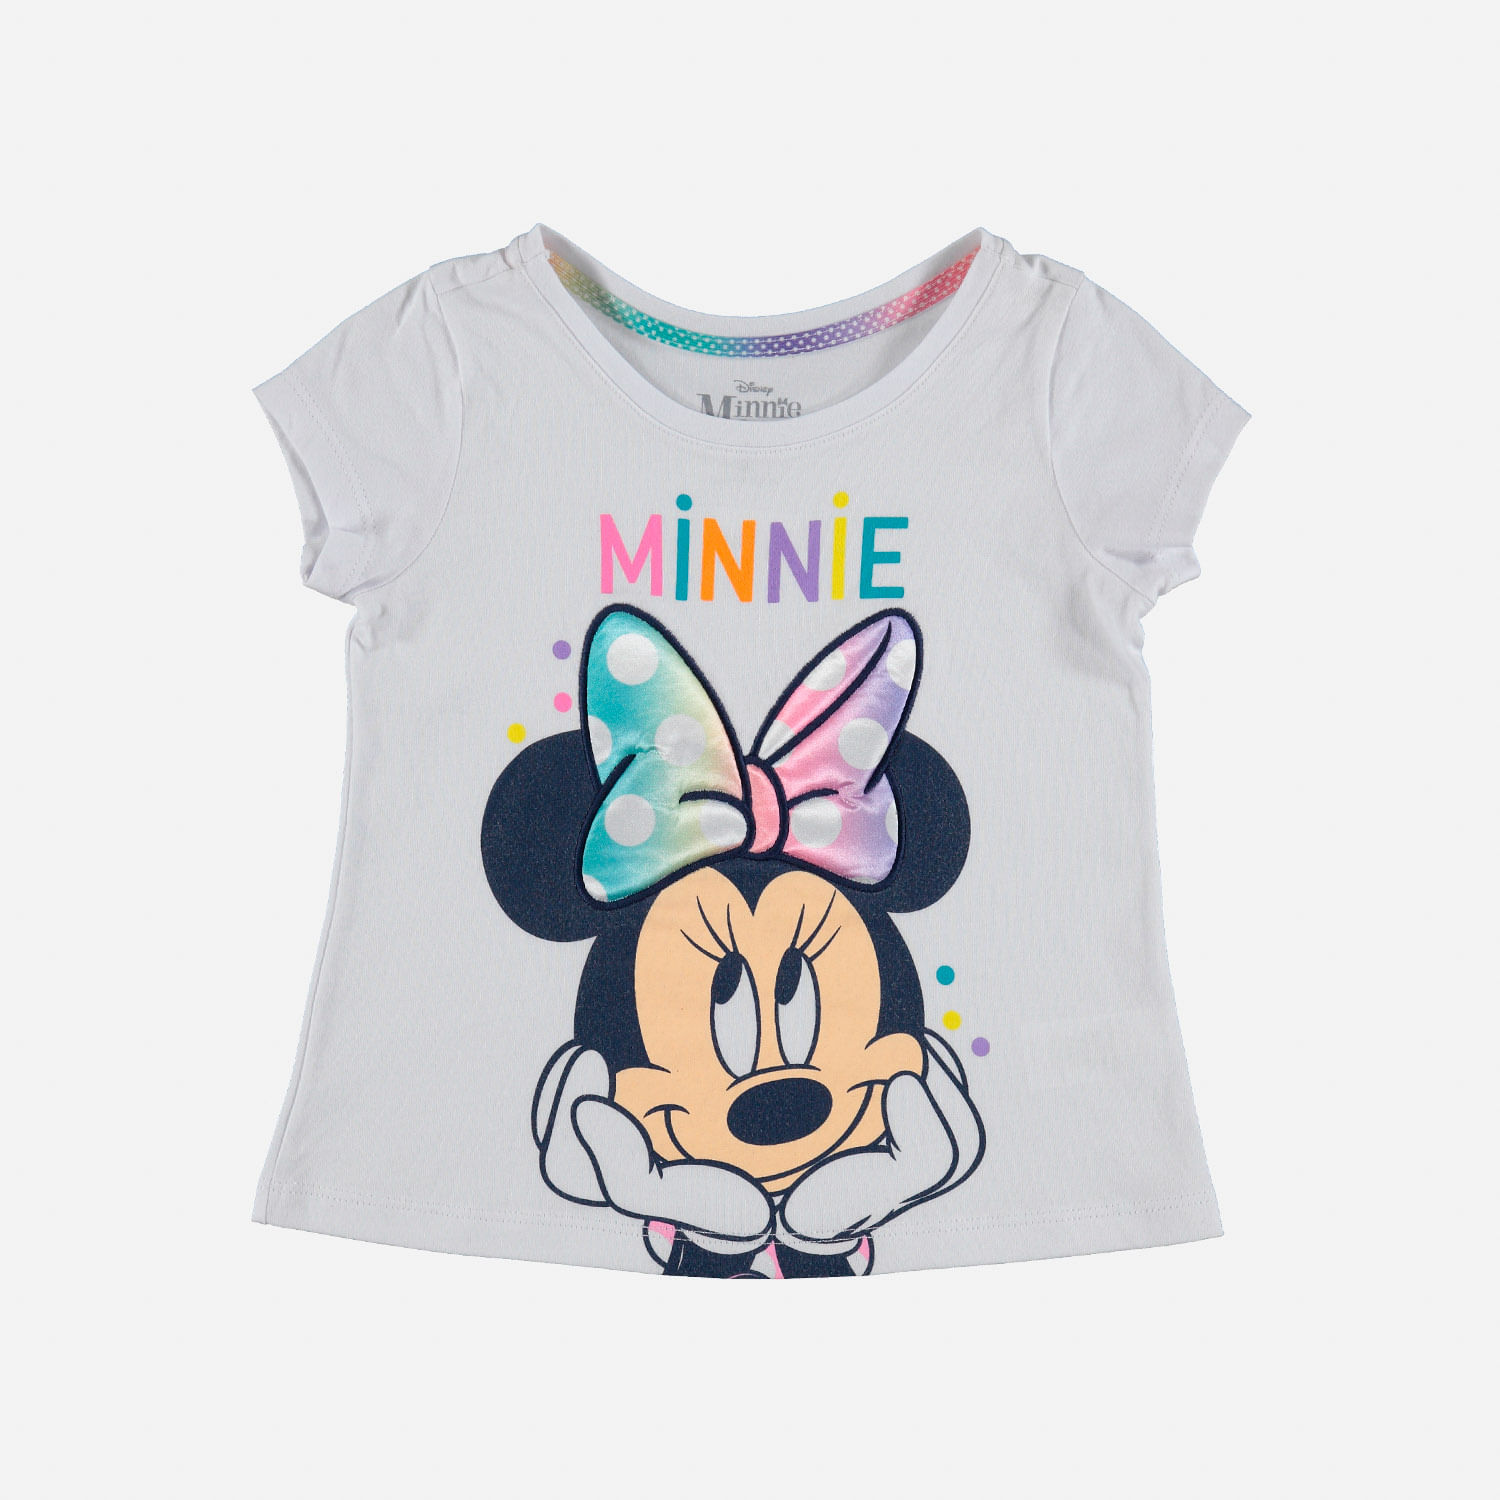 excepto por Claraboya Robusto Camiseta de Minnie blanca estampada para niña de 2T a 5T - Tienda Online MIC